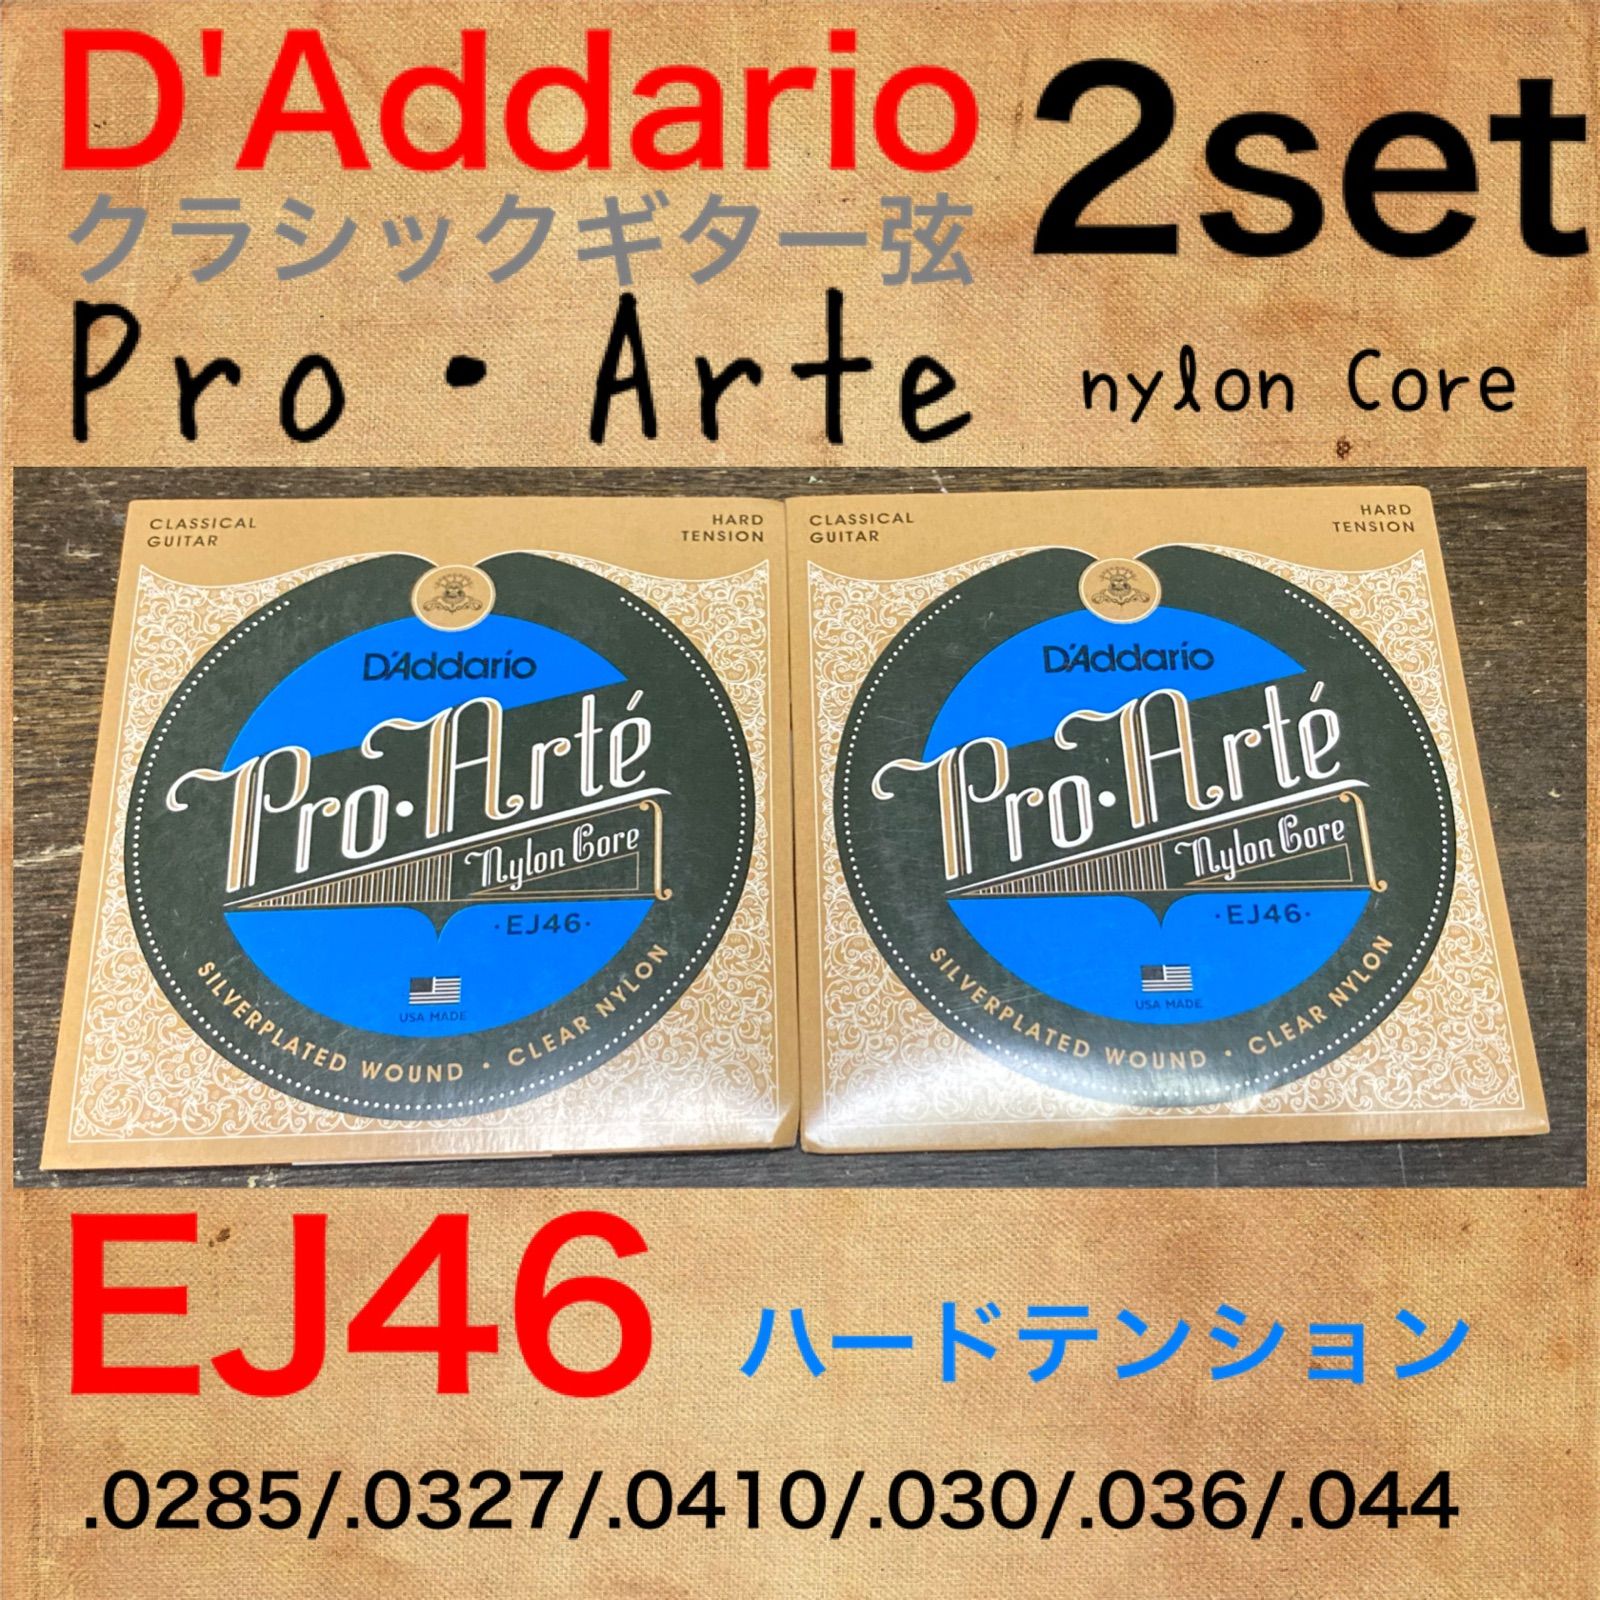 D'Addario ダダリオ クラシックギター弦 プロアルテ Silver Clear Extra Hard EJ44 x 10セット 国内